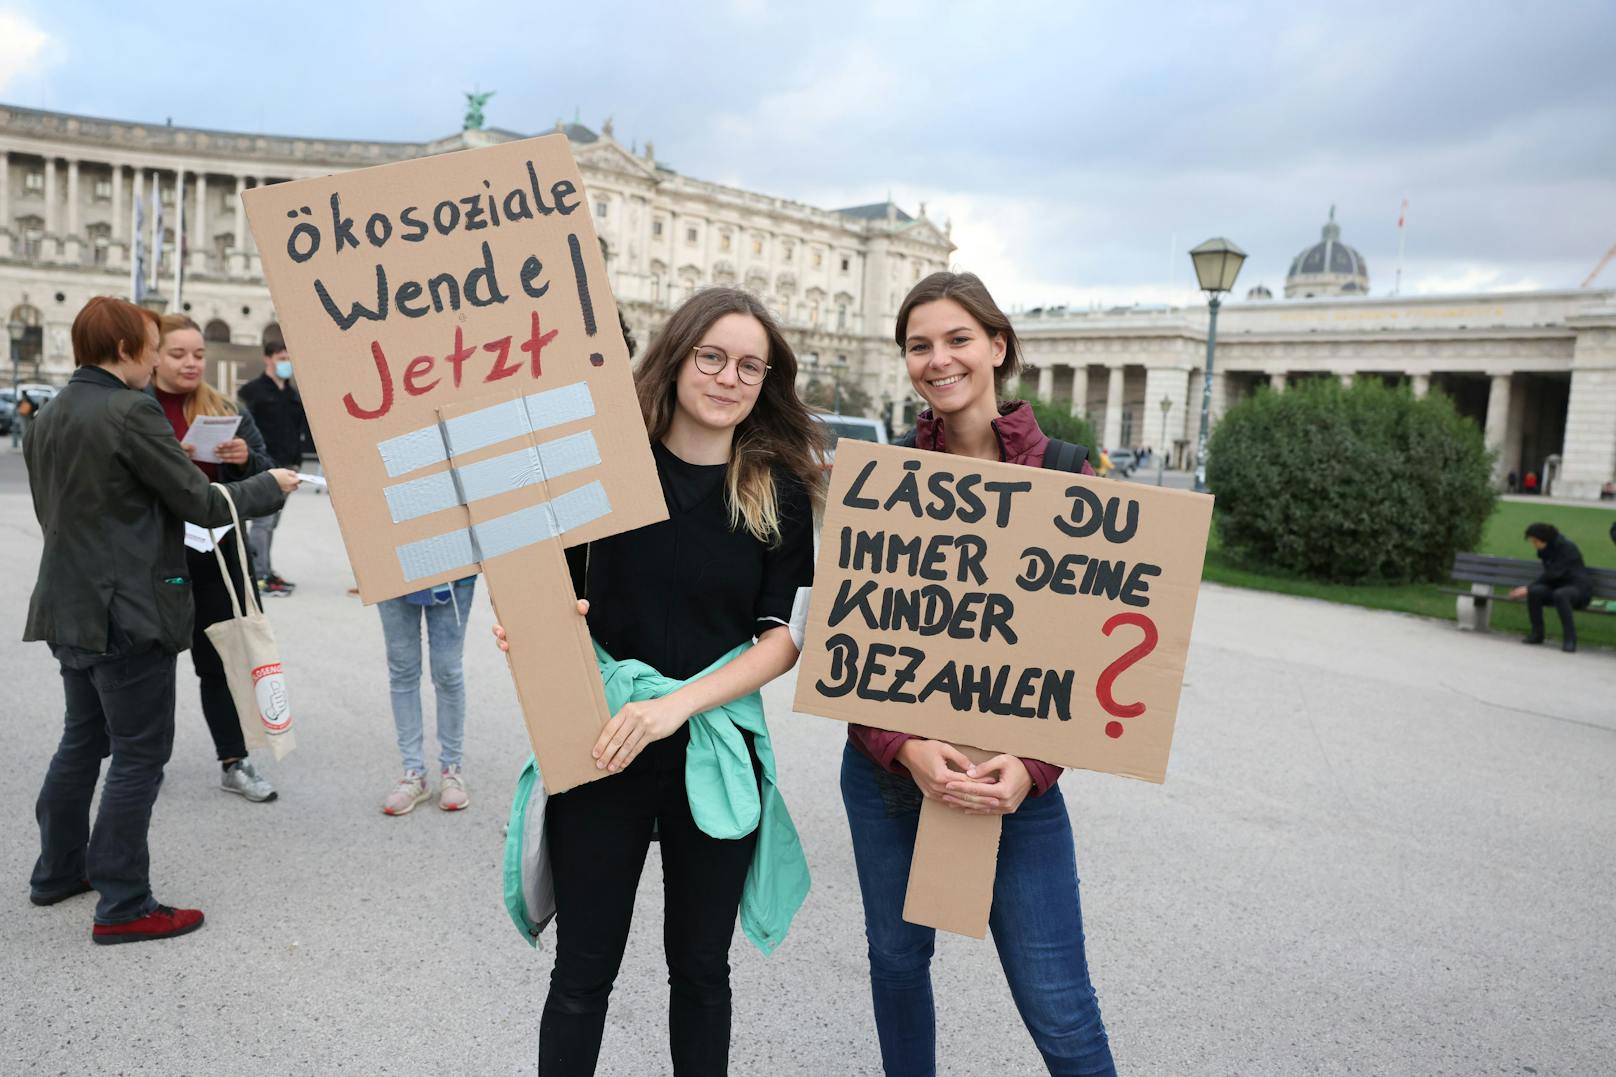 Sie gilt als Herzstück der türkis-grünen Regierung: Die ökosoziale Steuerreform. Dringend nachbessern, fordern die Aktivisten heute in Wien.